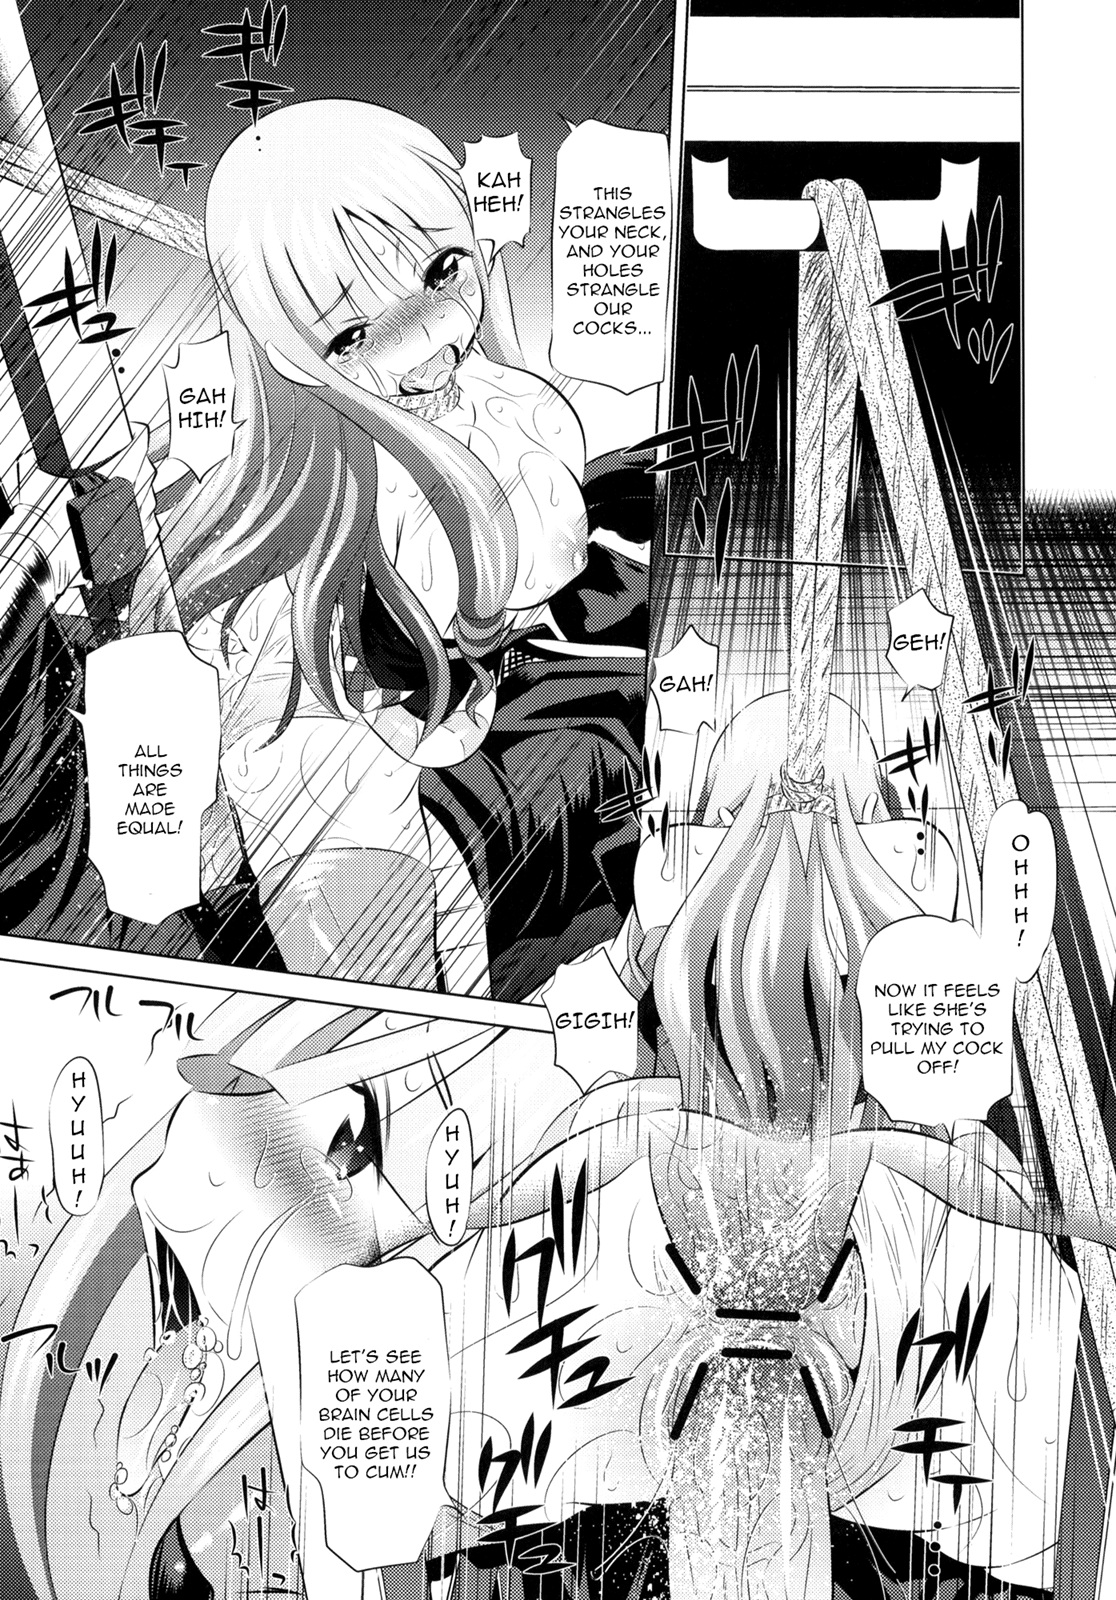 Togame vs Horse hentai manga picture 12